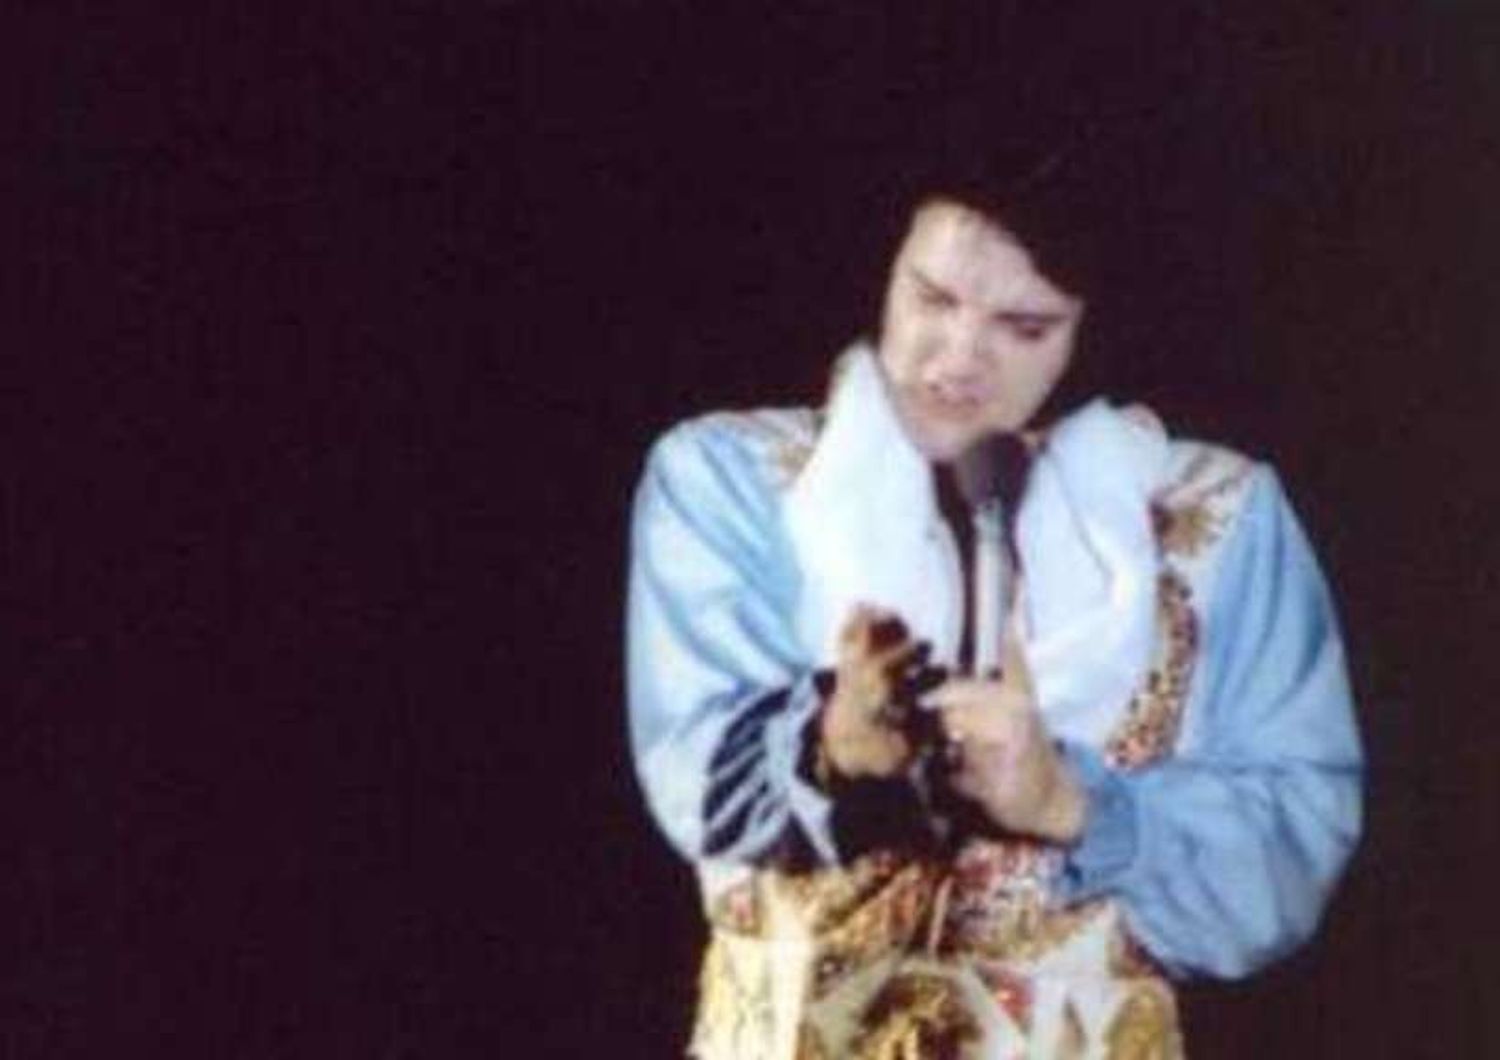 In vendita il "Santo Graal" dei dischi di Elvis Presley